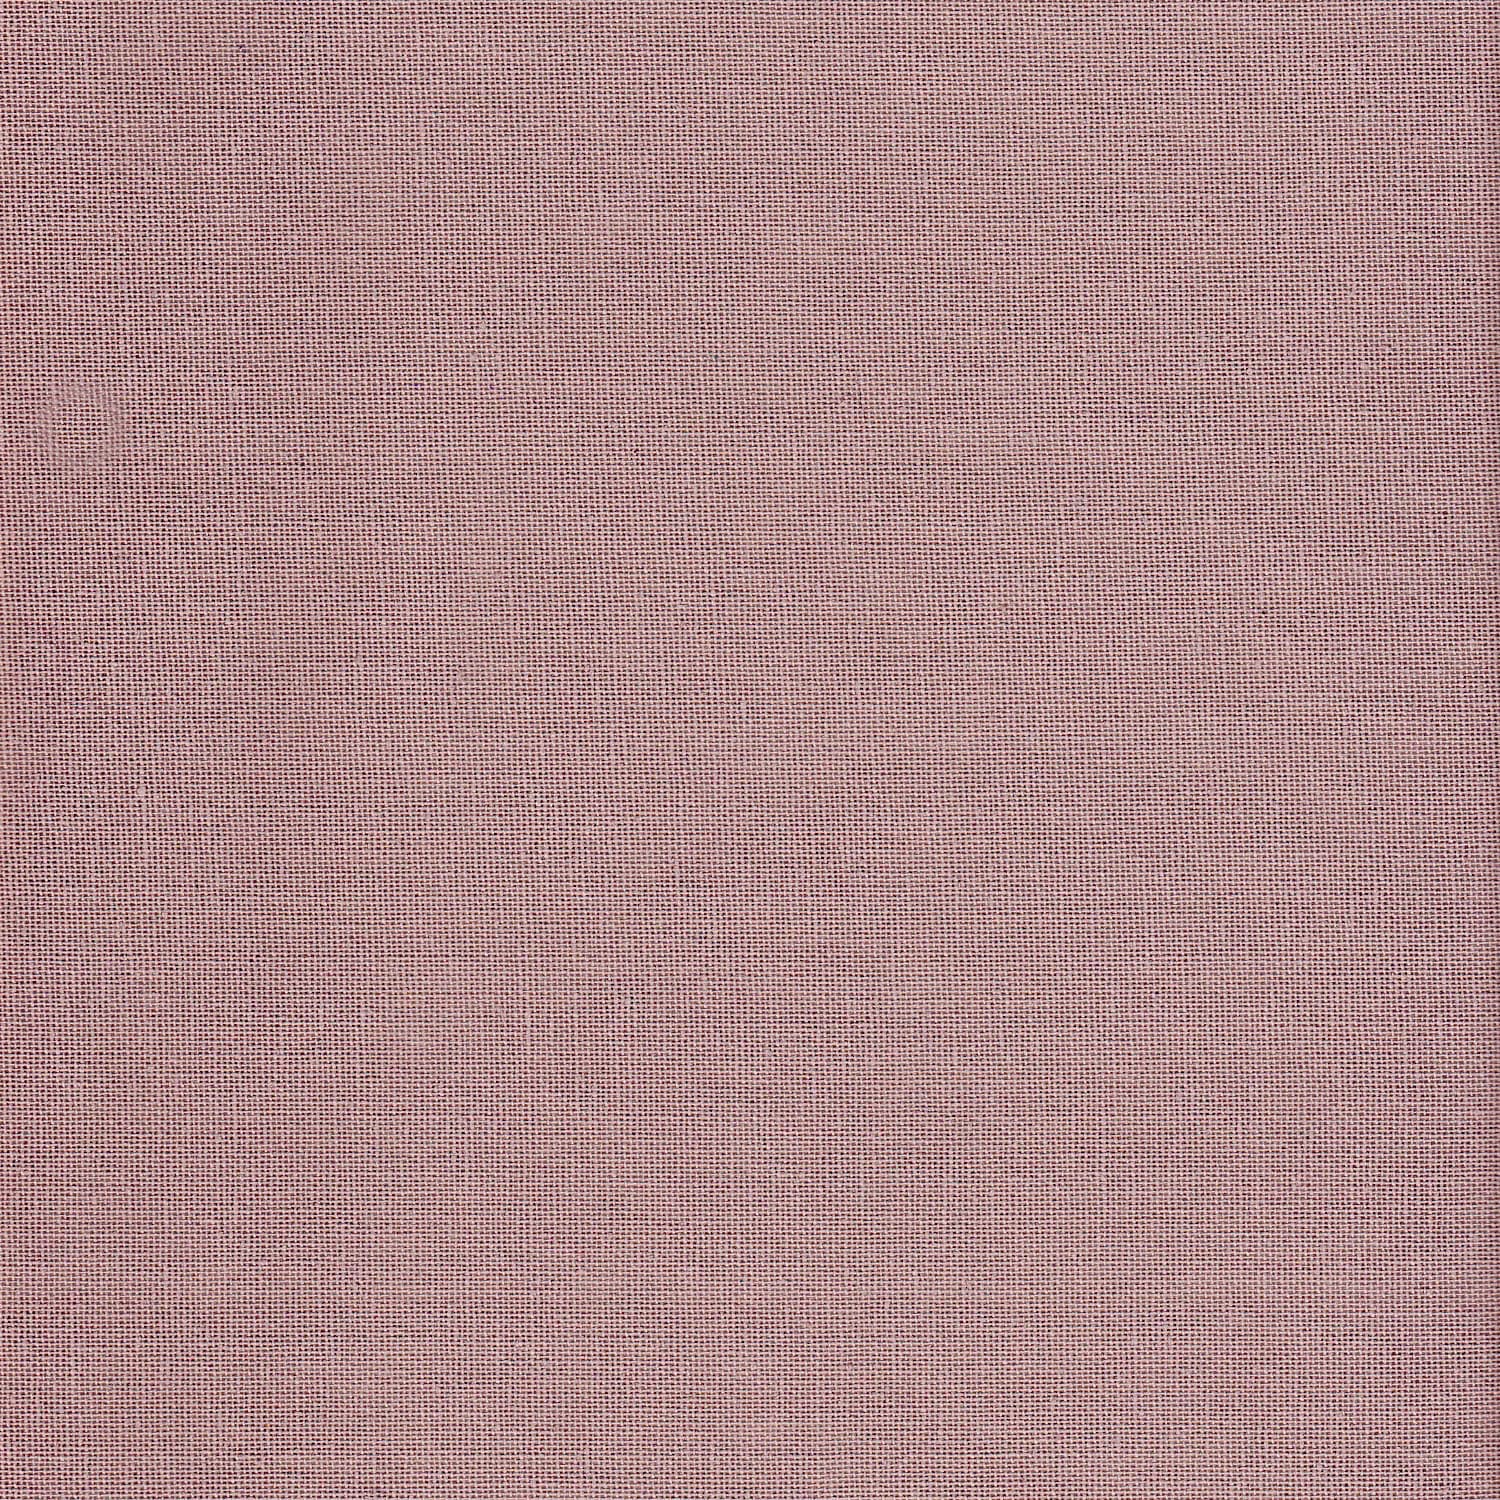 Numero 74 - Polly Flamingo Cushion - Dusty Pink - S007